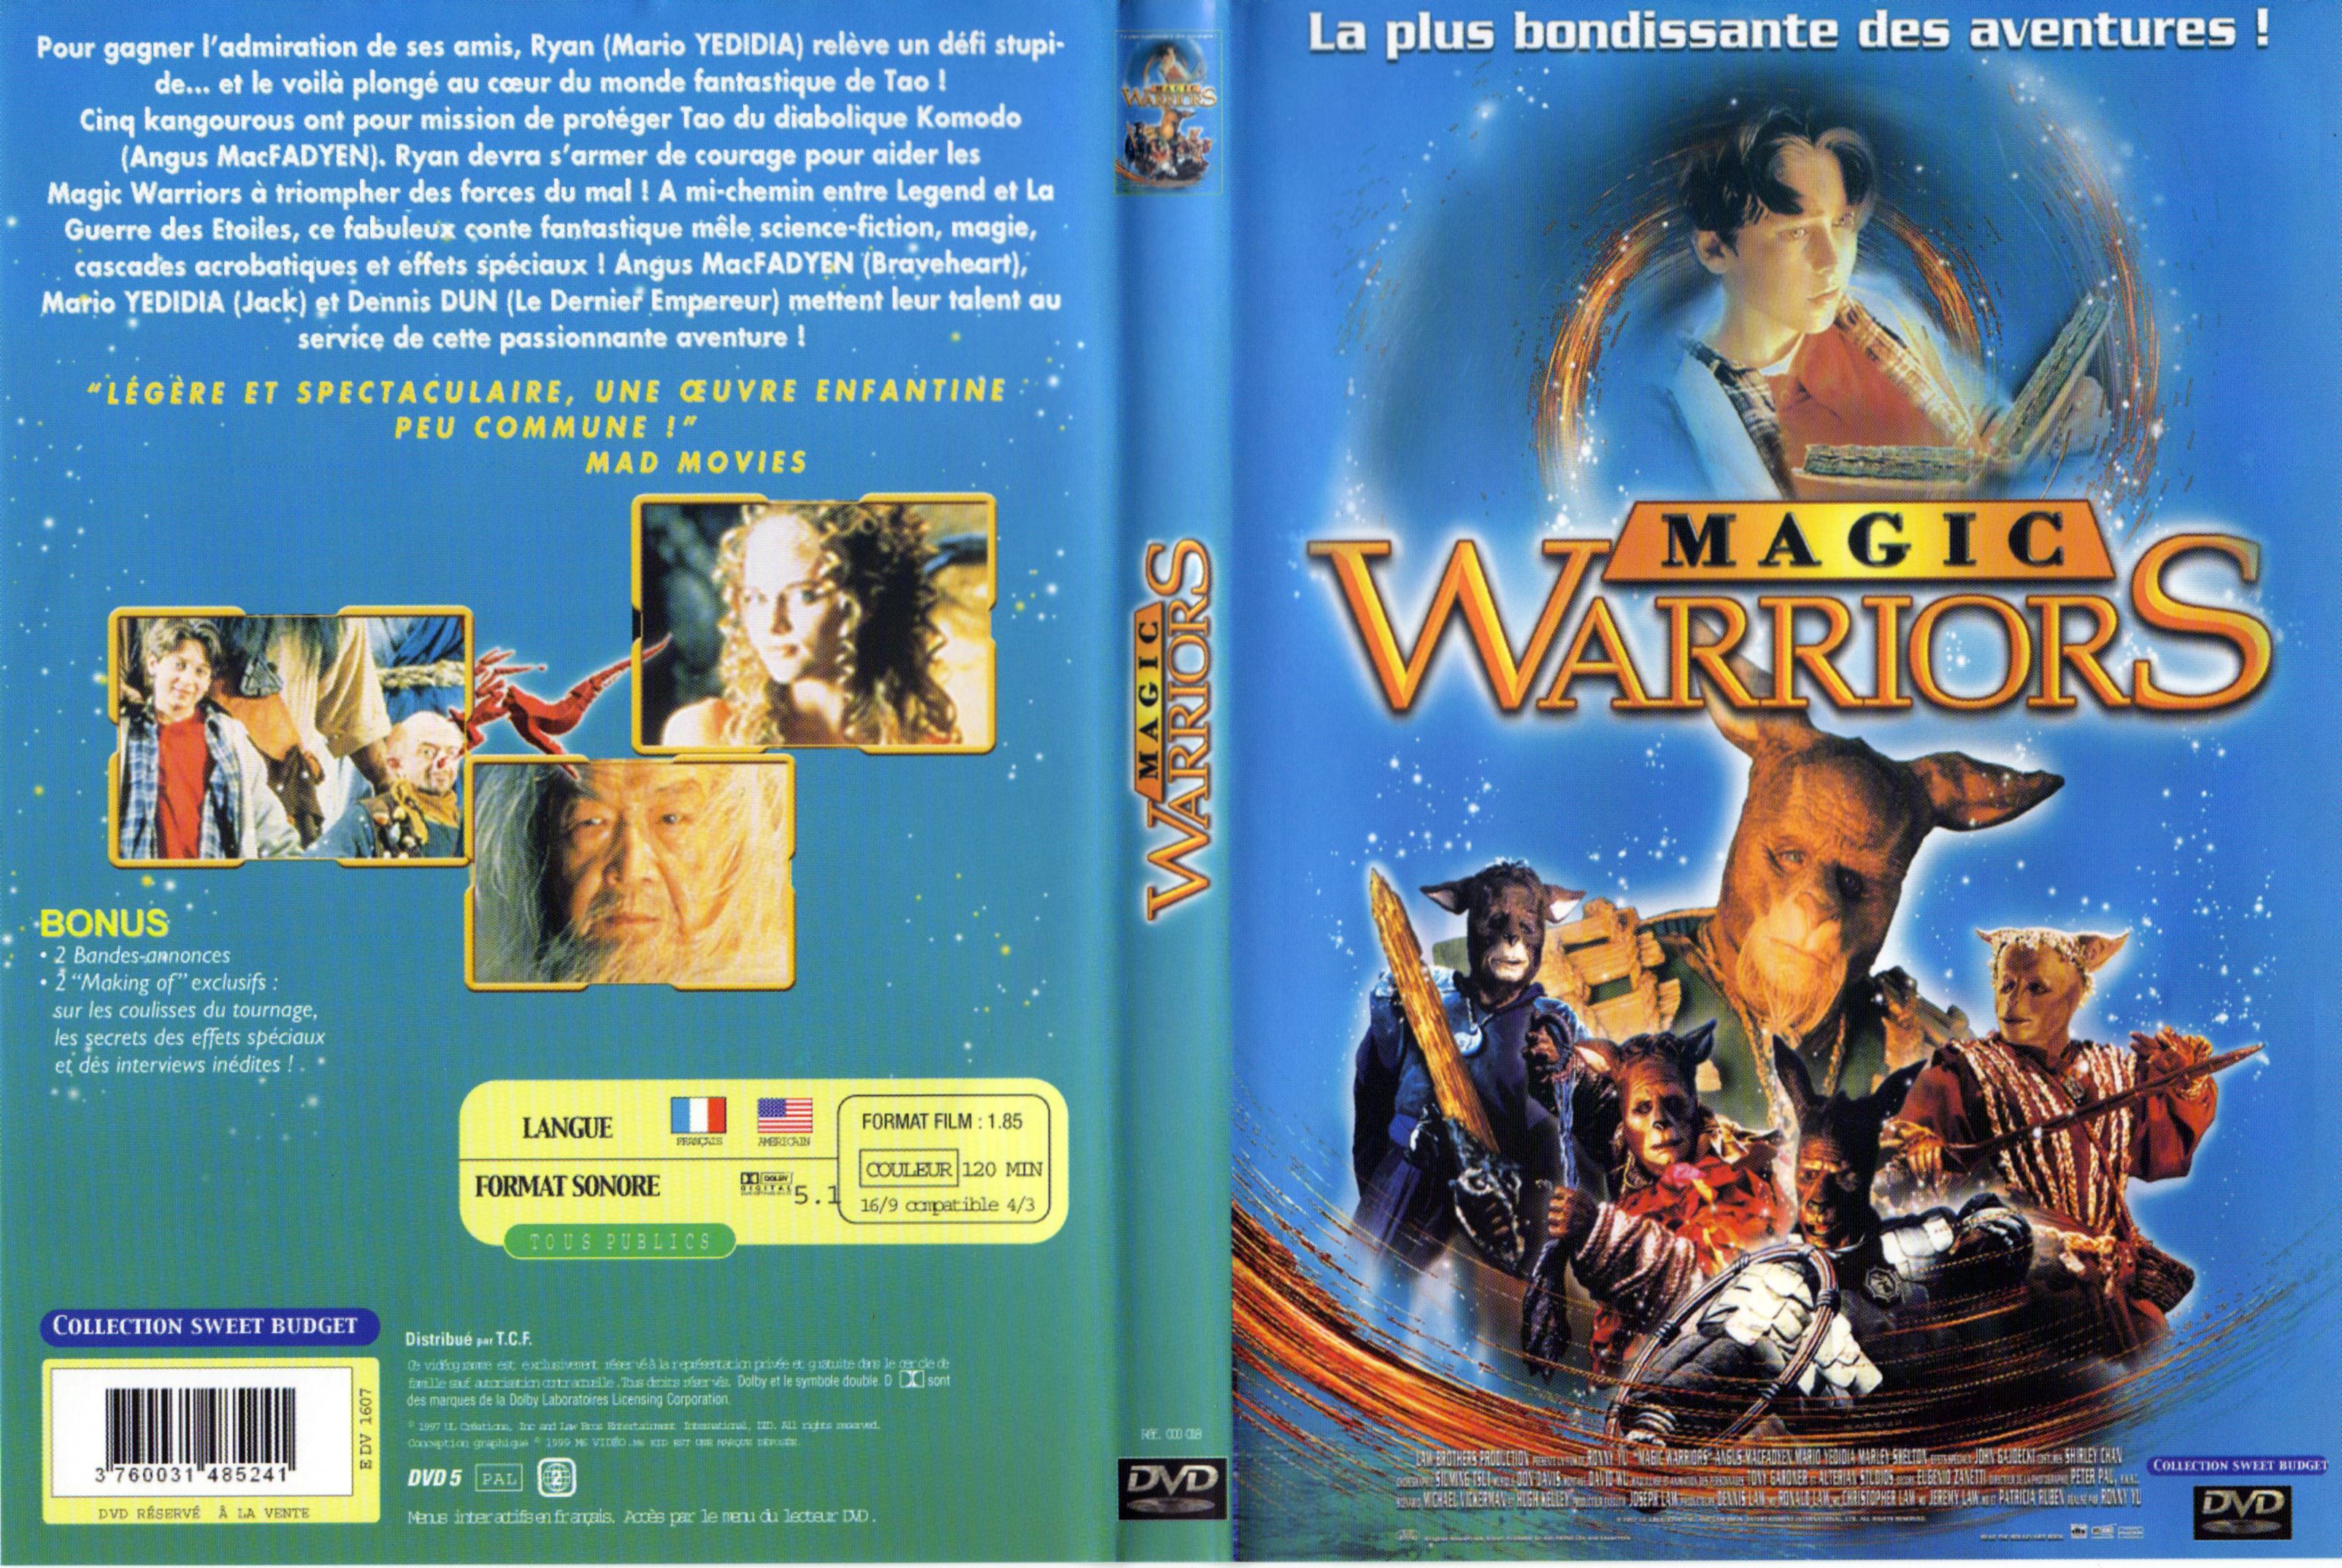 Jaquette DVD Magic warriors